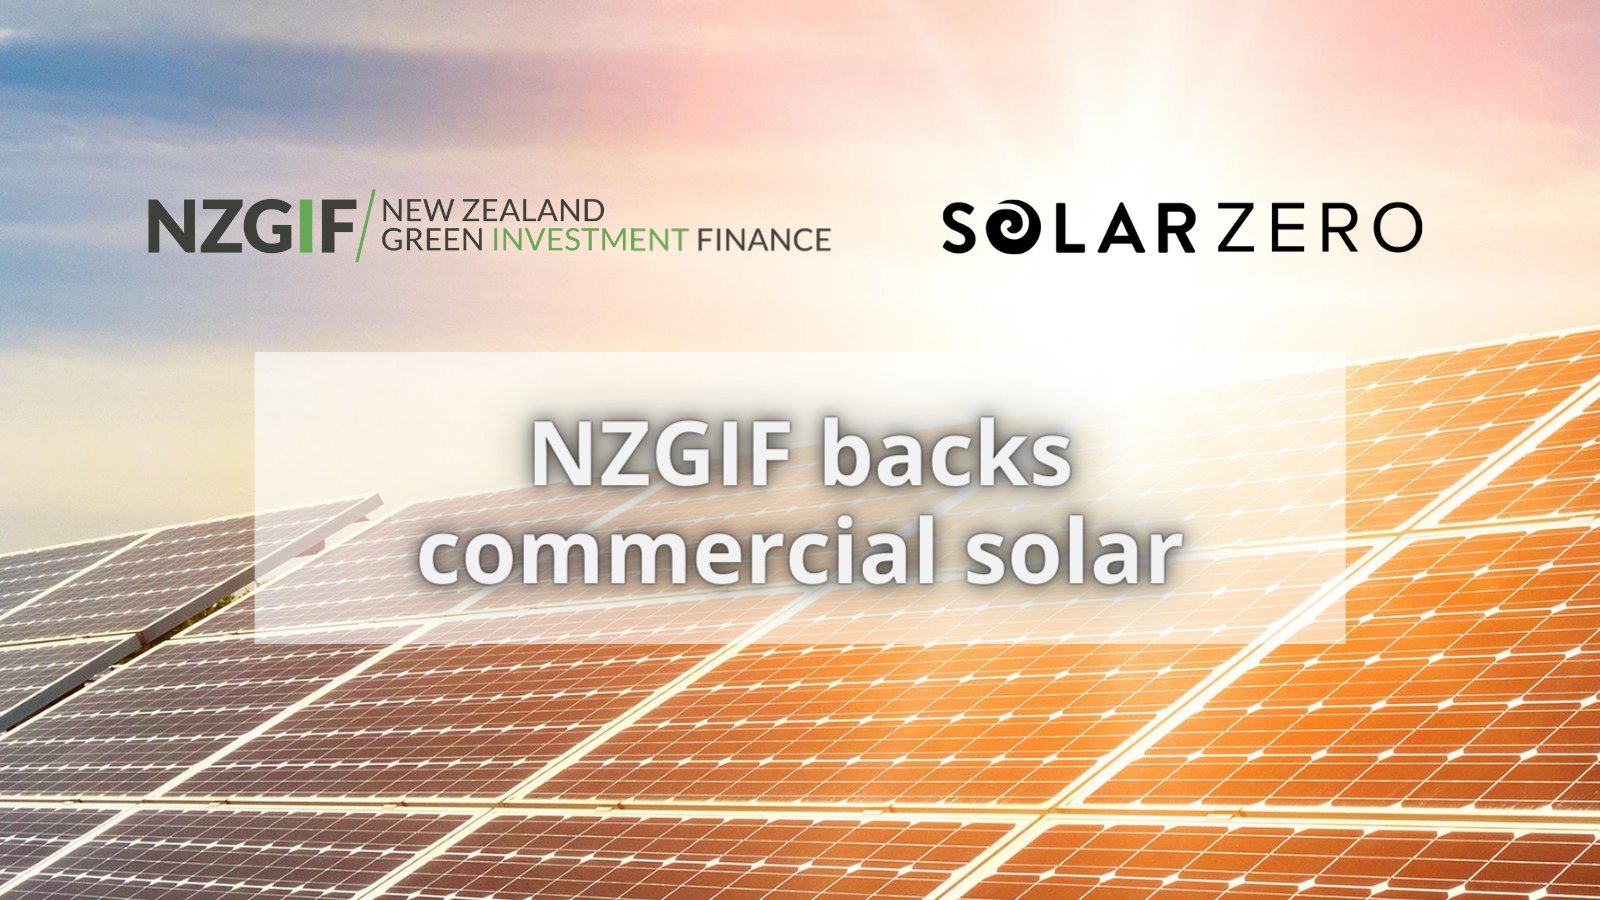 Bạn có đang tìm kiếm cơ hội đầu tư xanh tại New Zealand? Kế hoạch NZGIF được tự hào giới thiệu là cơ hội tuyệt vời cho những nhà đầu tư có nhu cầu đầu tư vào các dự án xanh. Hãy tìm hiểu và khám phá thêm về cơ hội đầu tư xanh này trên Twitter của NZGIF.